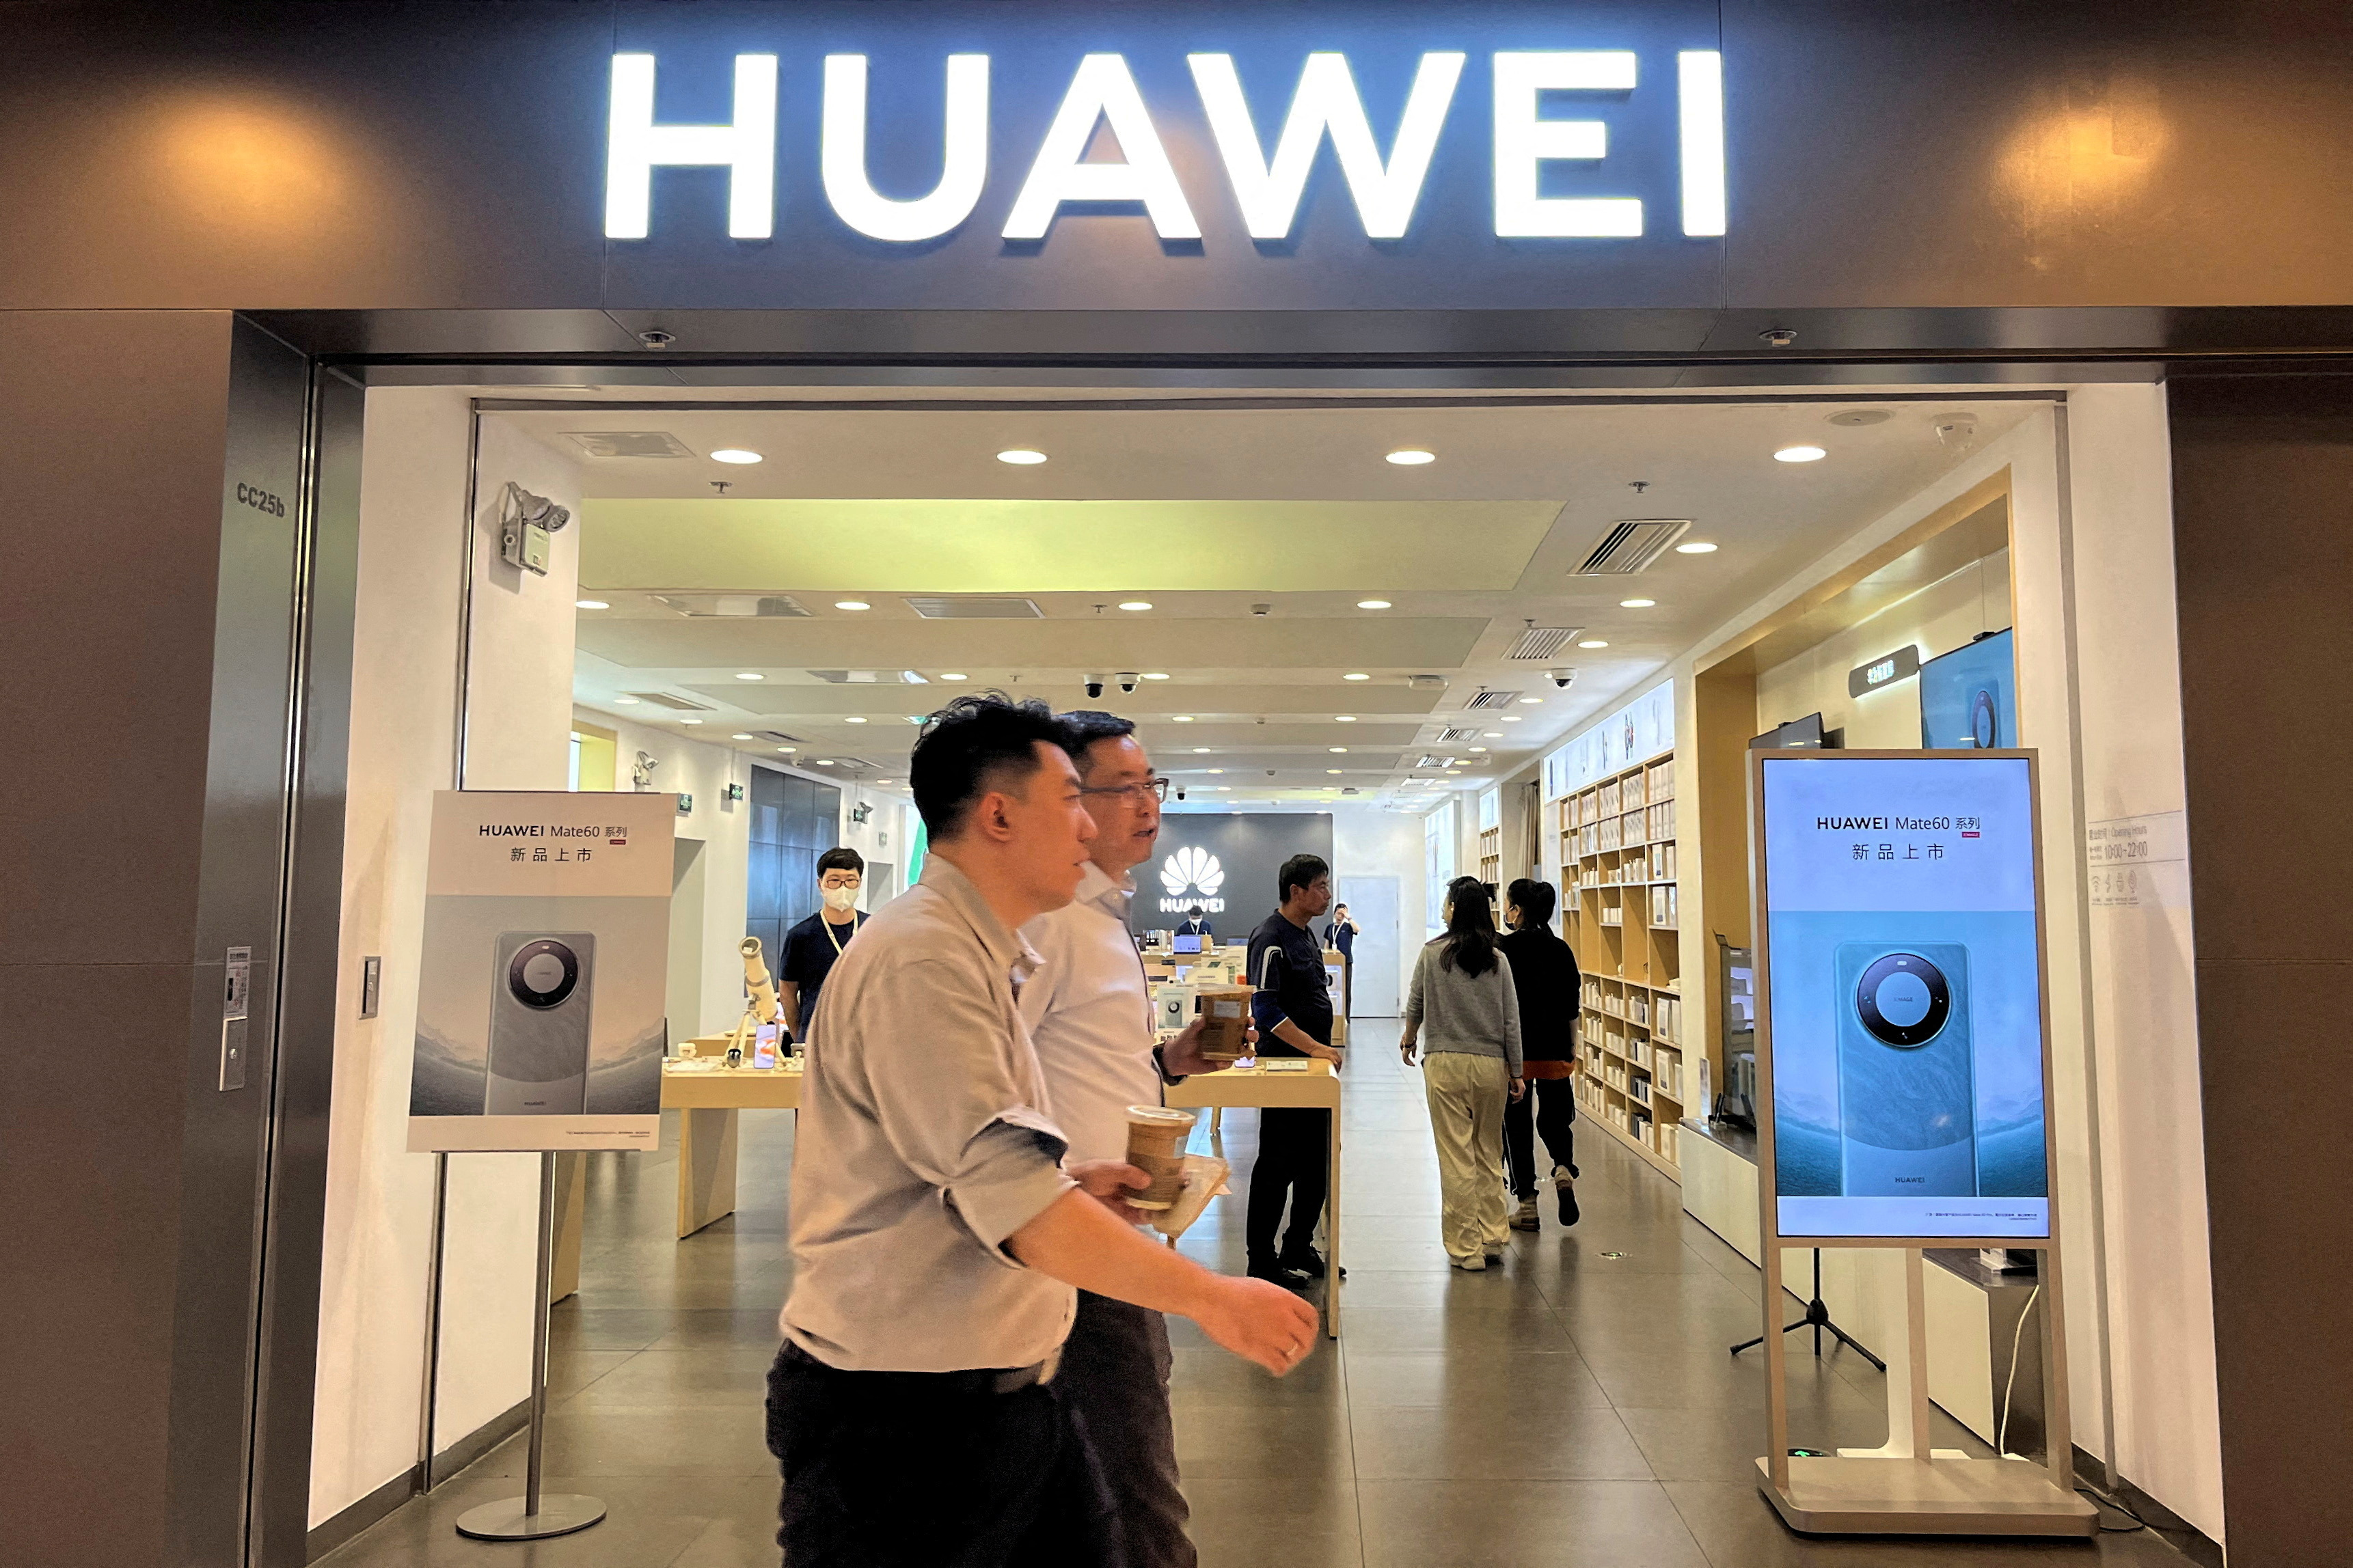 Publicités pour le Huawei Mate 60 à Pékin